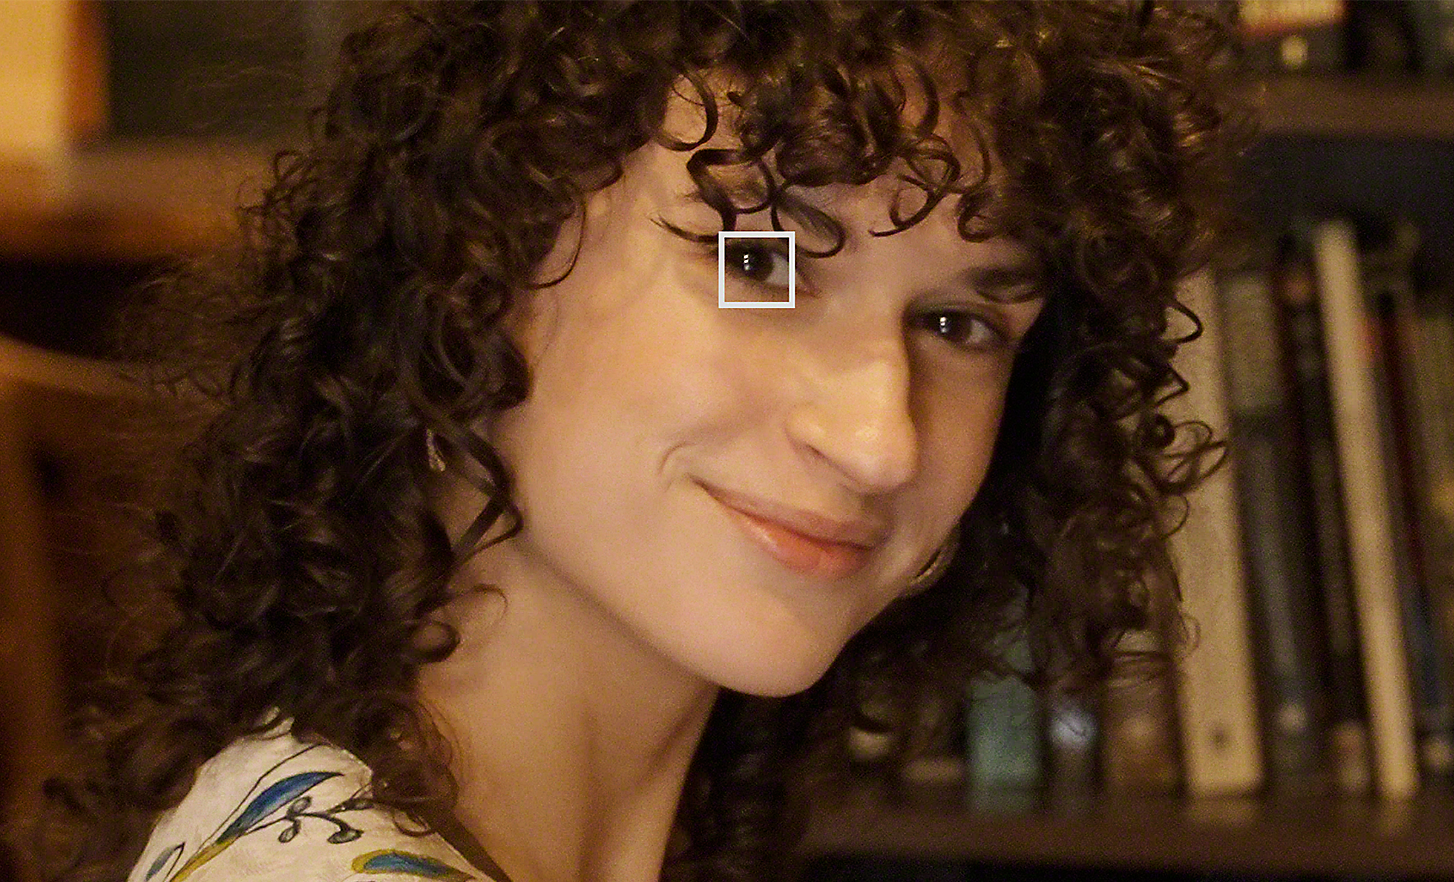 Eine Frau in einer Bibliothek blickt in die Kamera – ein kleines weißes Quadrat über ihrem Auge kennzeichnet den Augen-AF für Video